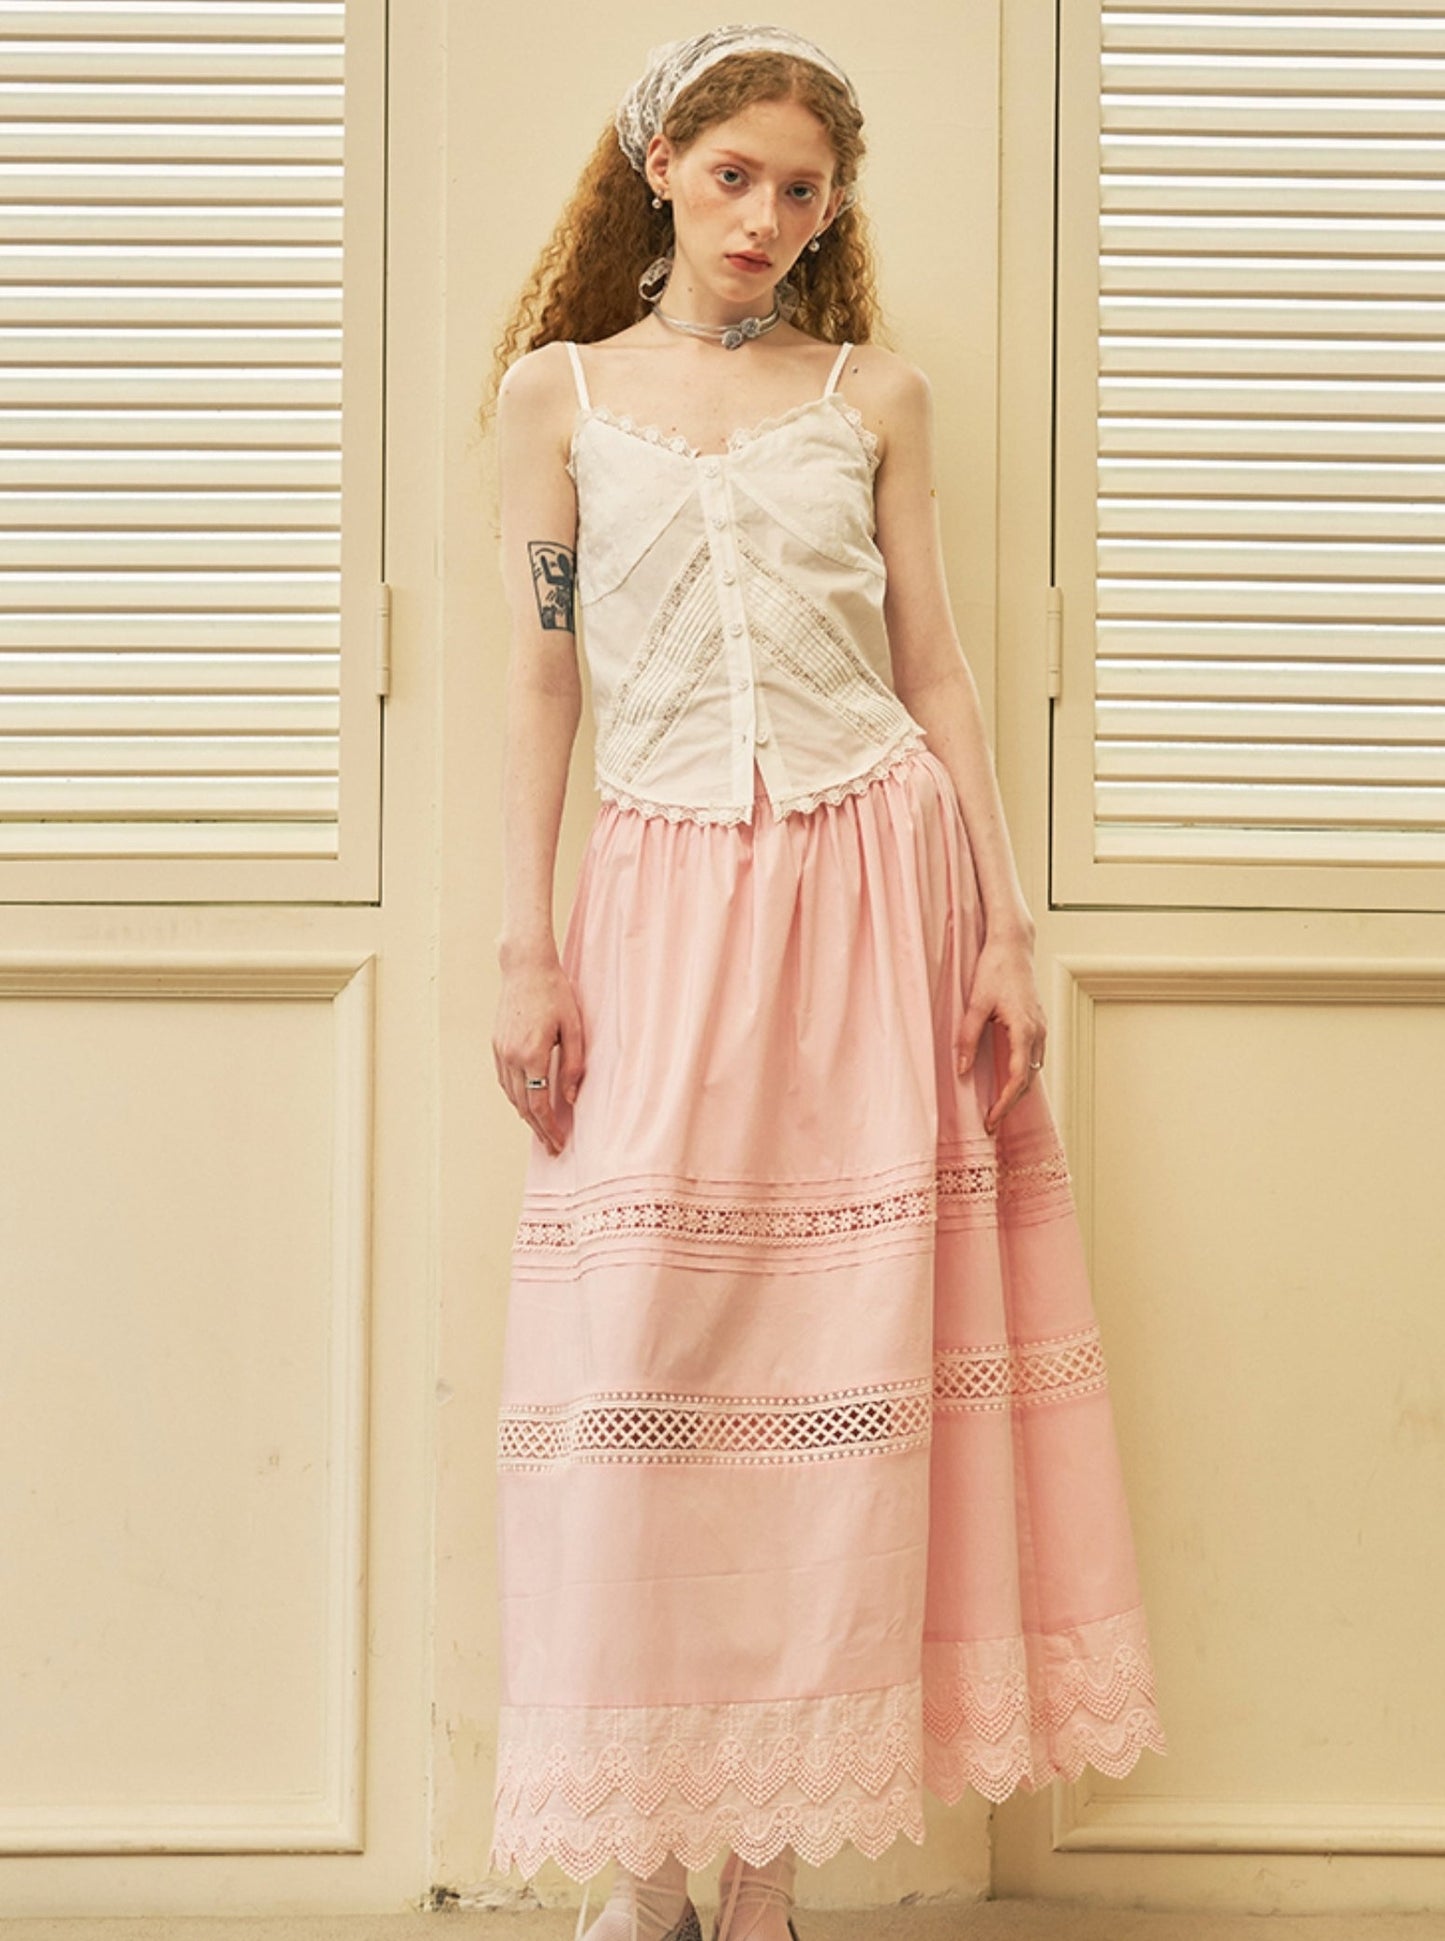 Simple Lace Midi Skirt